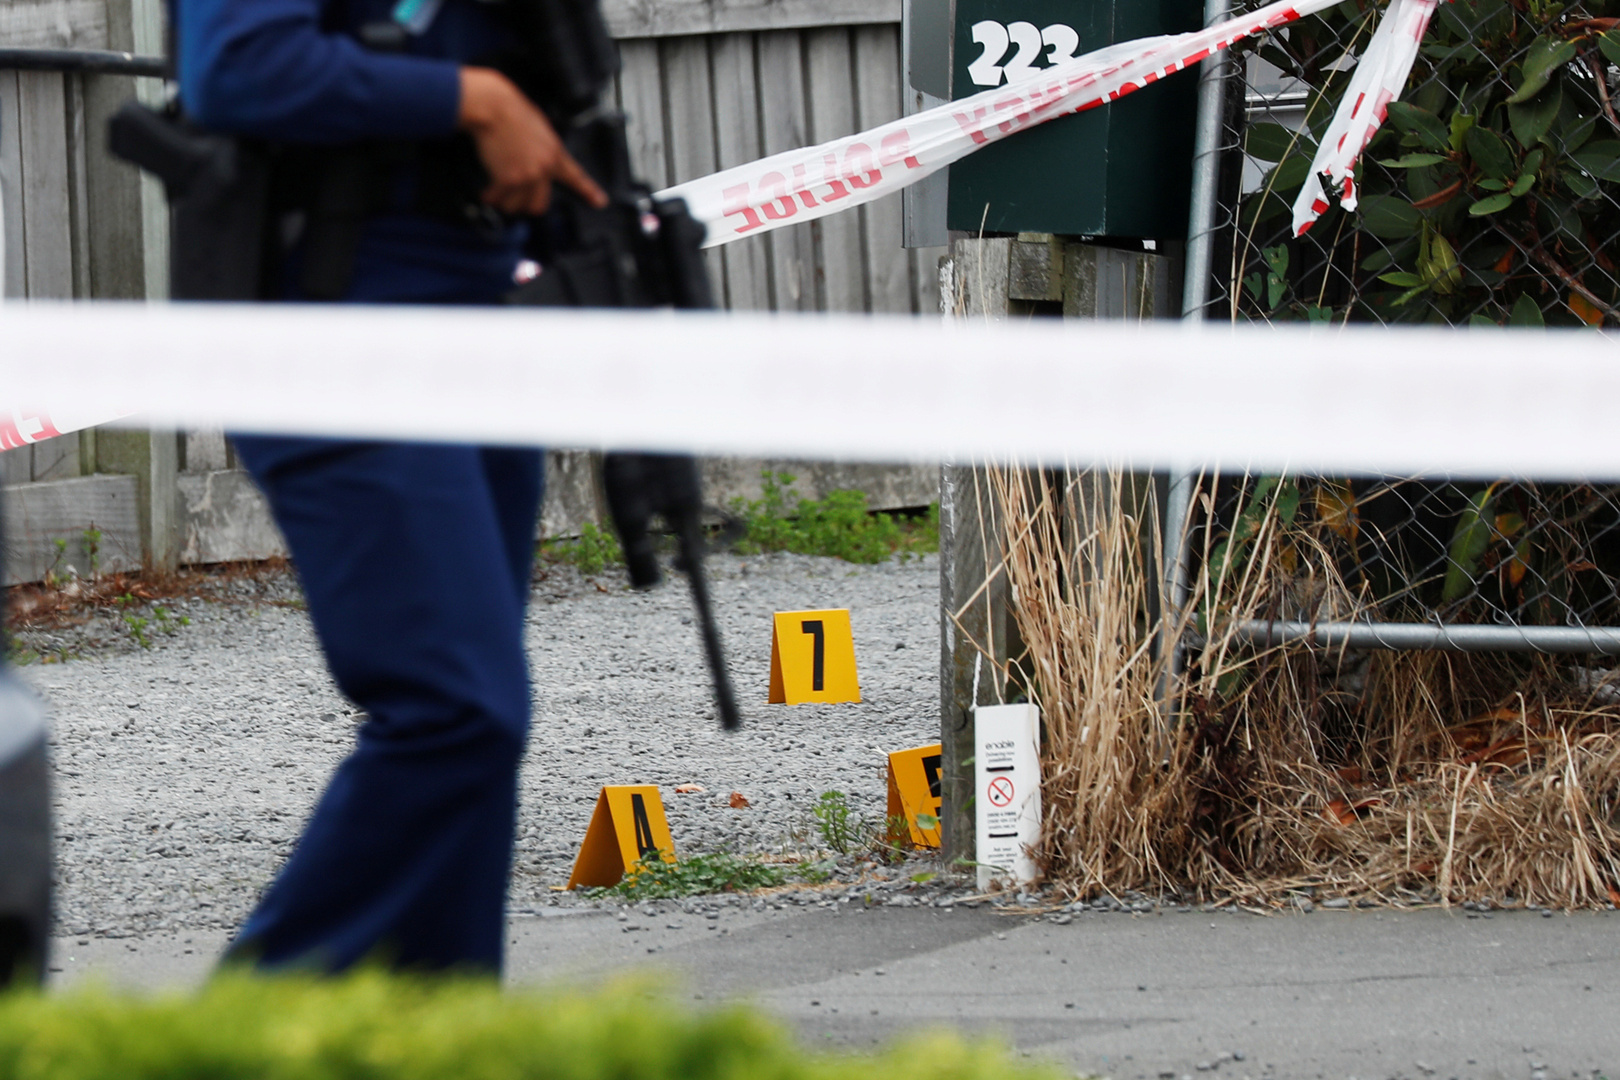 عنصر من الشرطة يحرس موقع إطلاق النار أثناء التحقيق خارج مسجد لينوود في كرايستشيرش بنيوزيلندا